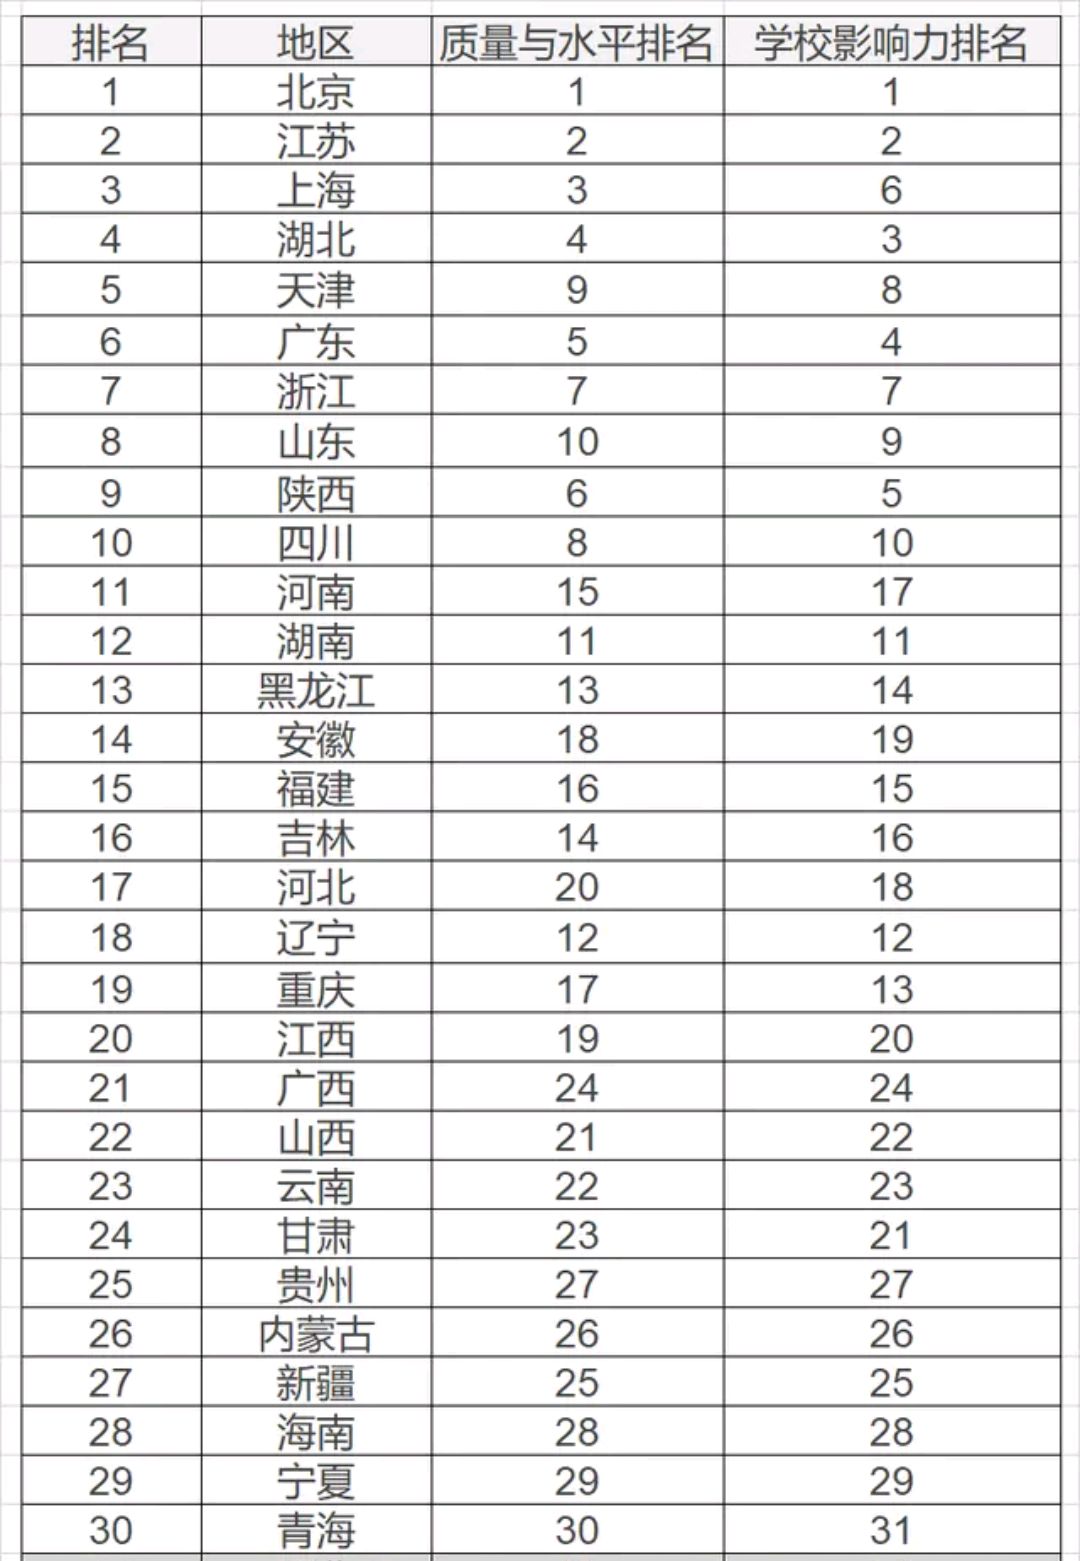 中国内地31个省市教育水平排名,中国教育强省有哪些?你认可吗